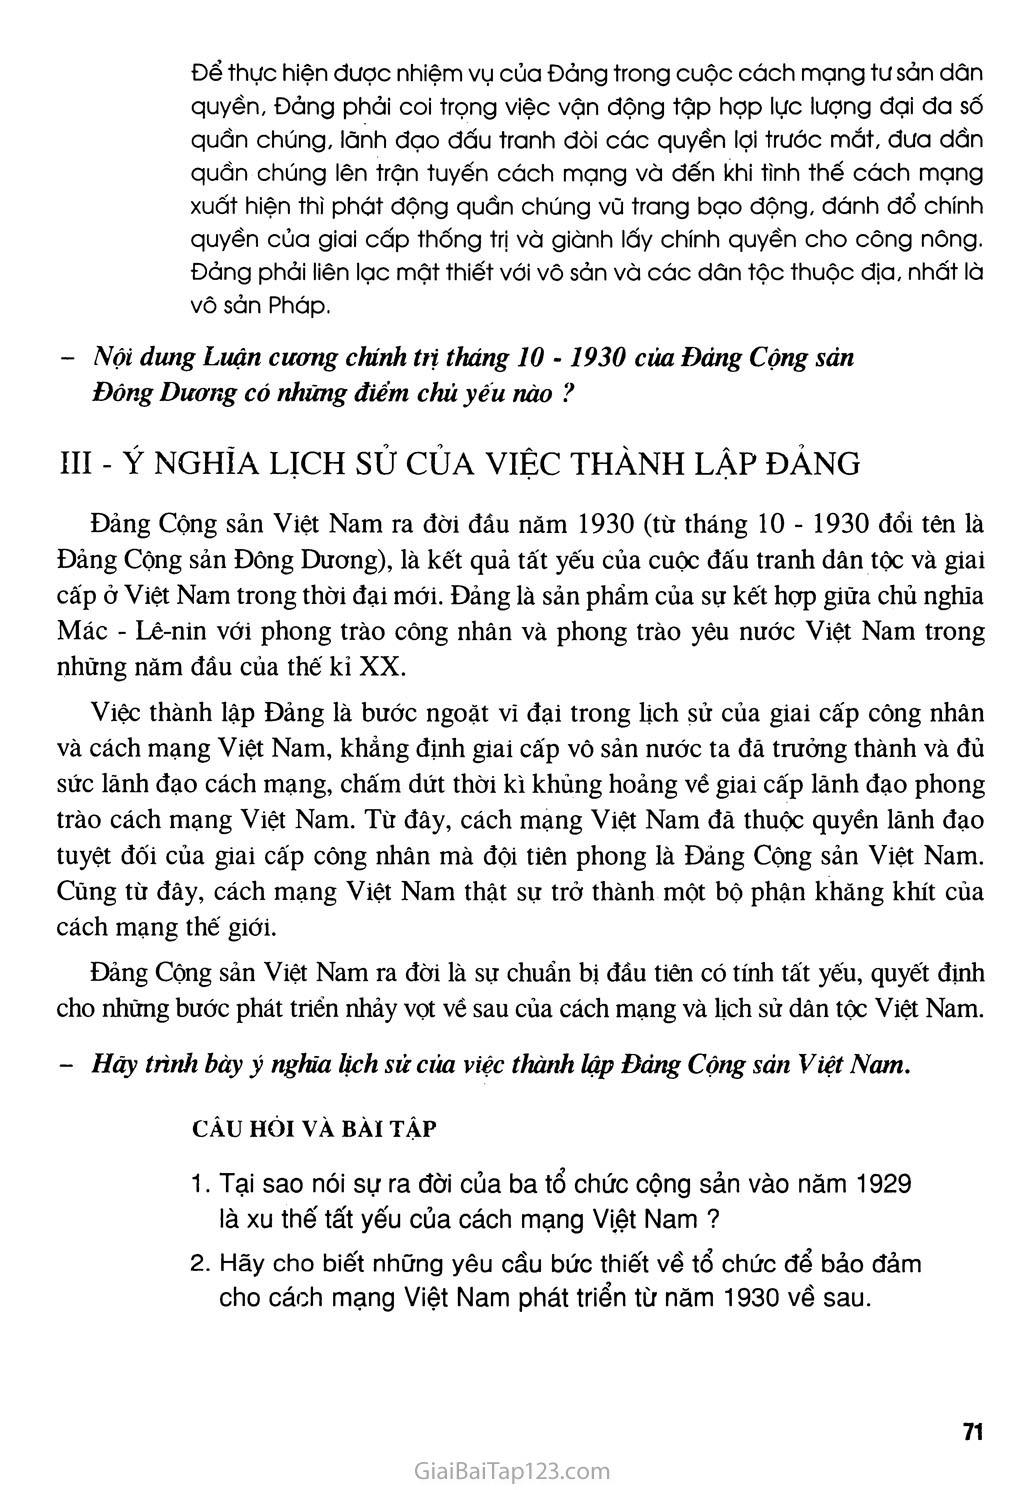 Bài 18 - Đảng Cộng sản Việt Nam ra đời trang 3